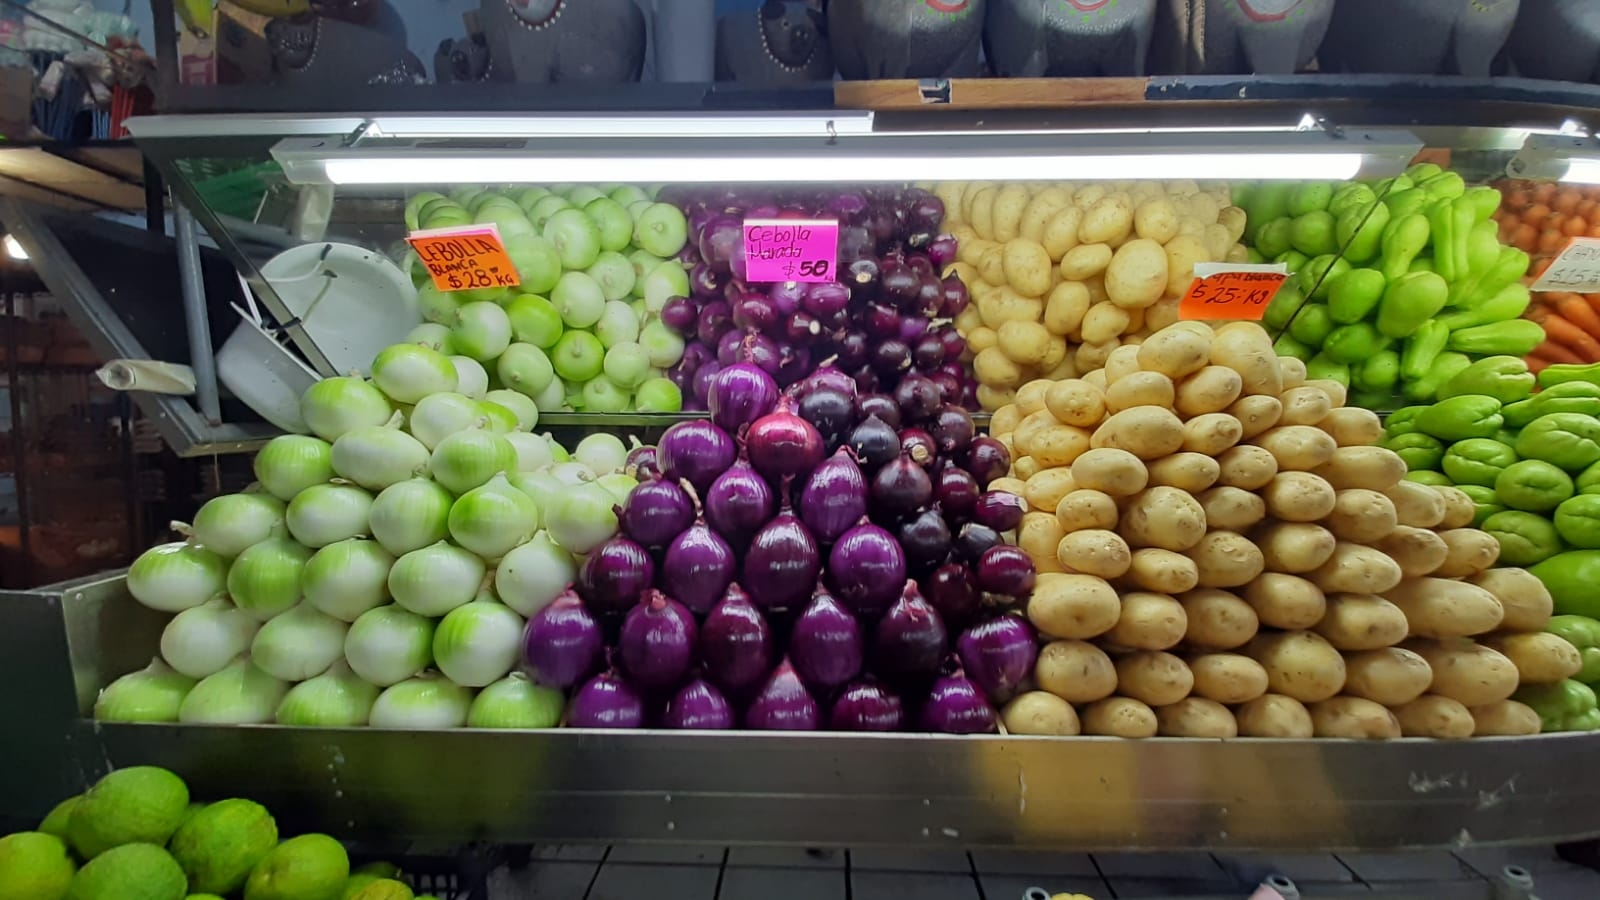 Incrementan precios de frutas y verduras en Playa del Carmen, denuncian locatarios